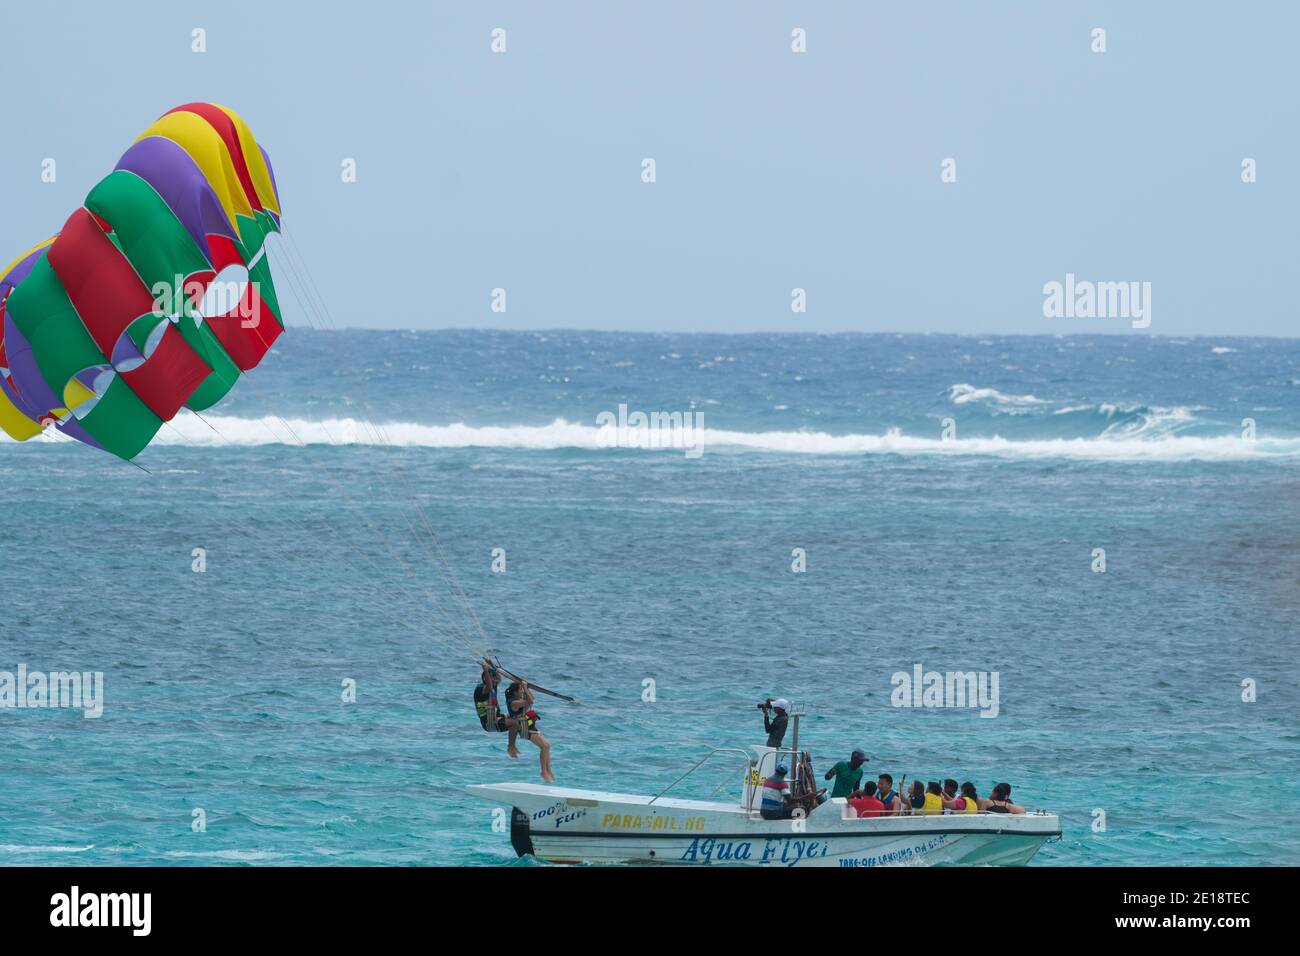 bateau de parachute ascensionnel et couple tandem sur parachute ascensionnel ouvert se préparer pour prendre des photos dans le ciel À Maurice Banque D'Images